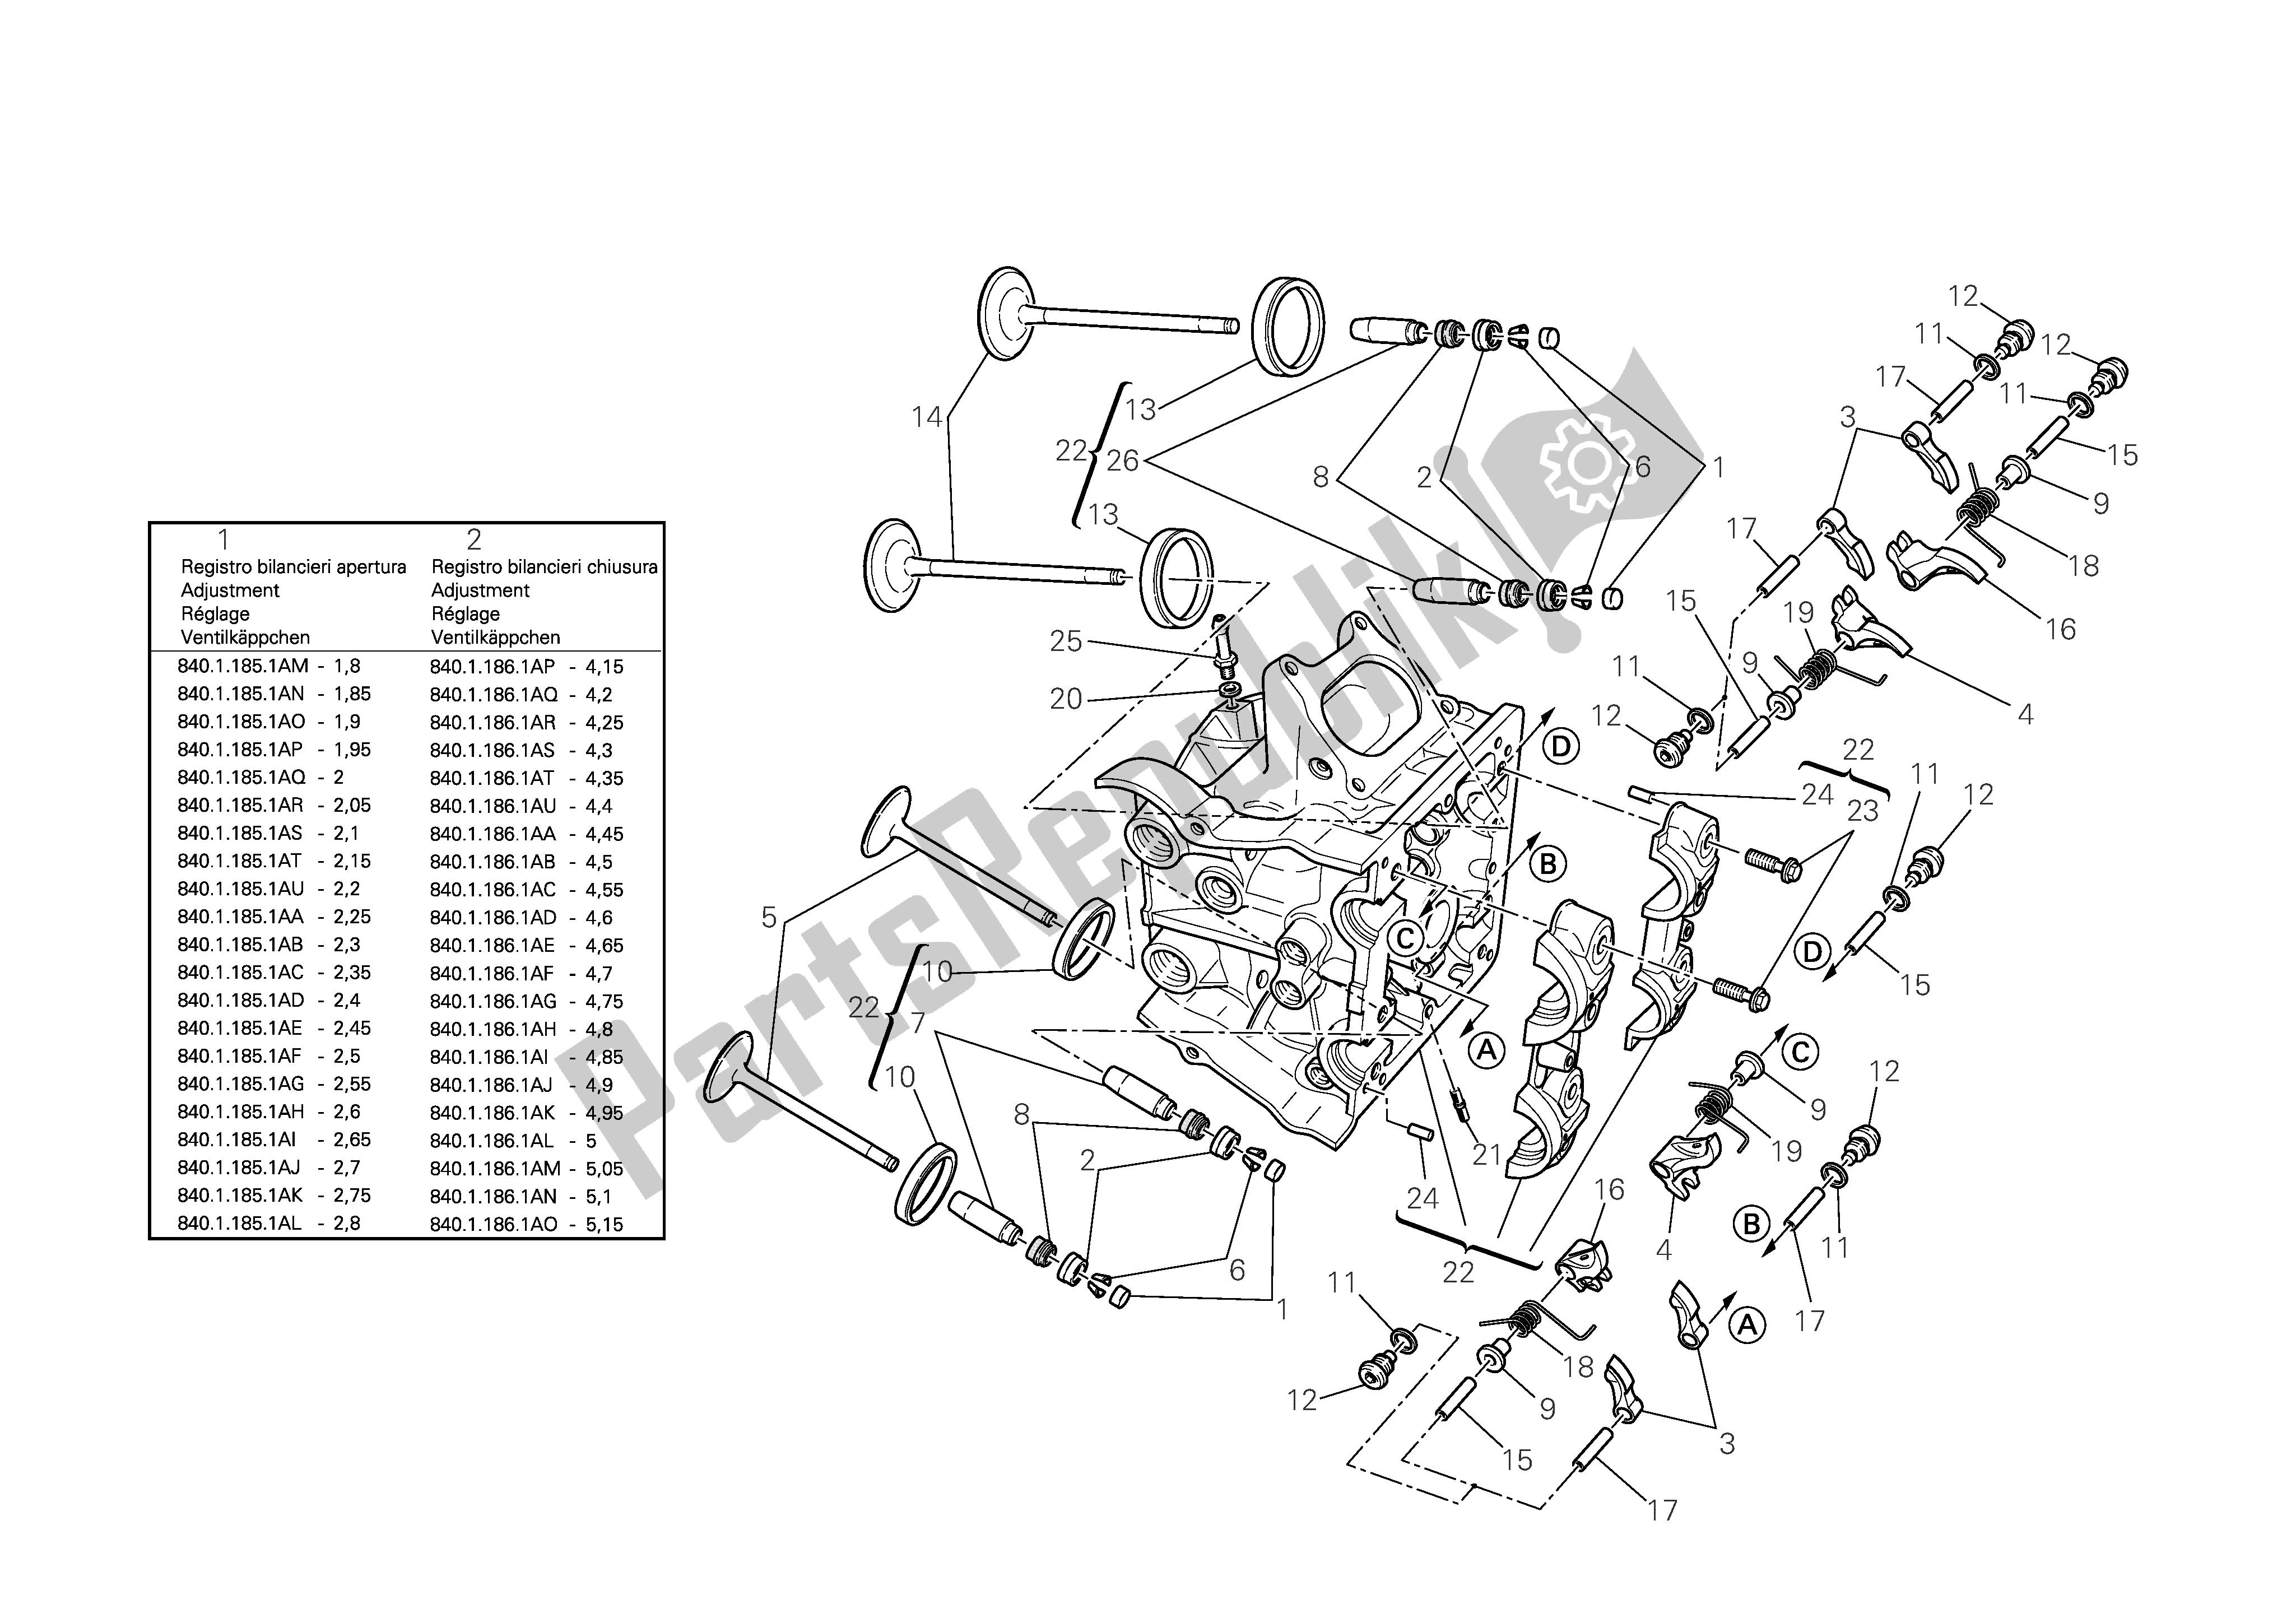 Alle onderdelen voor de Horizontale Cilinderkop van de Ducati 1098 R Bayliss 2009